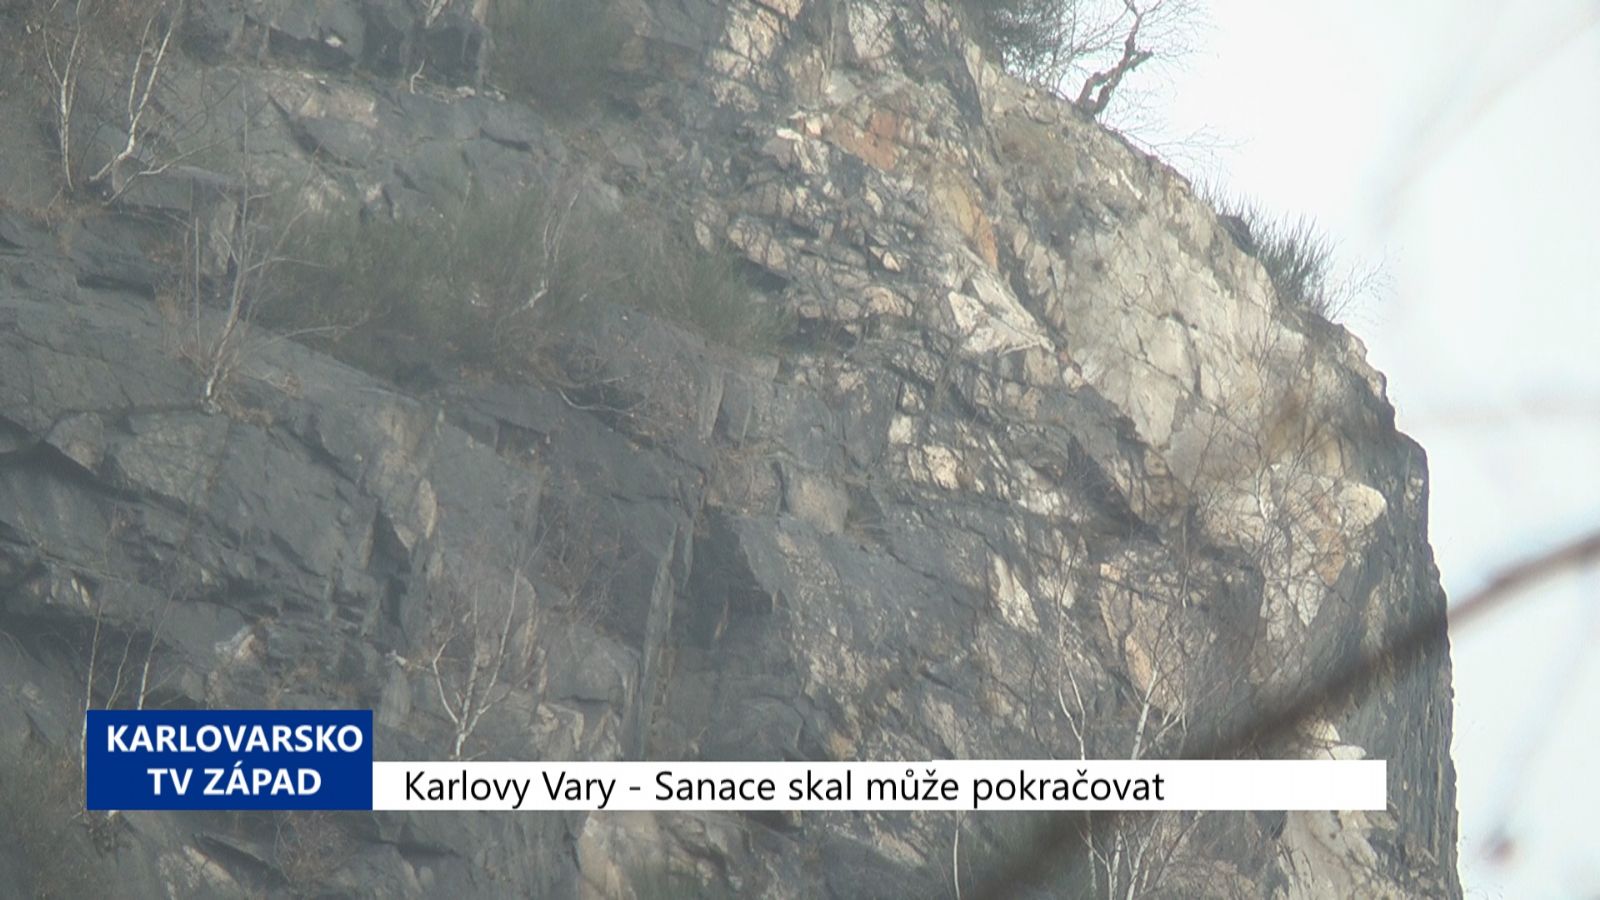 Karlovy Vary: Sanace skal může pokračovat (TV Západ)